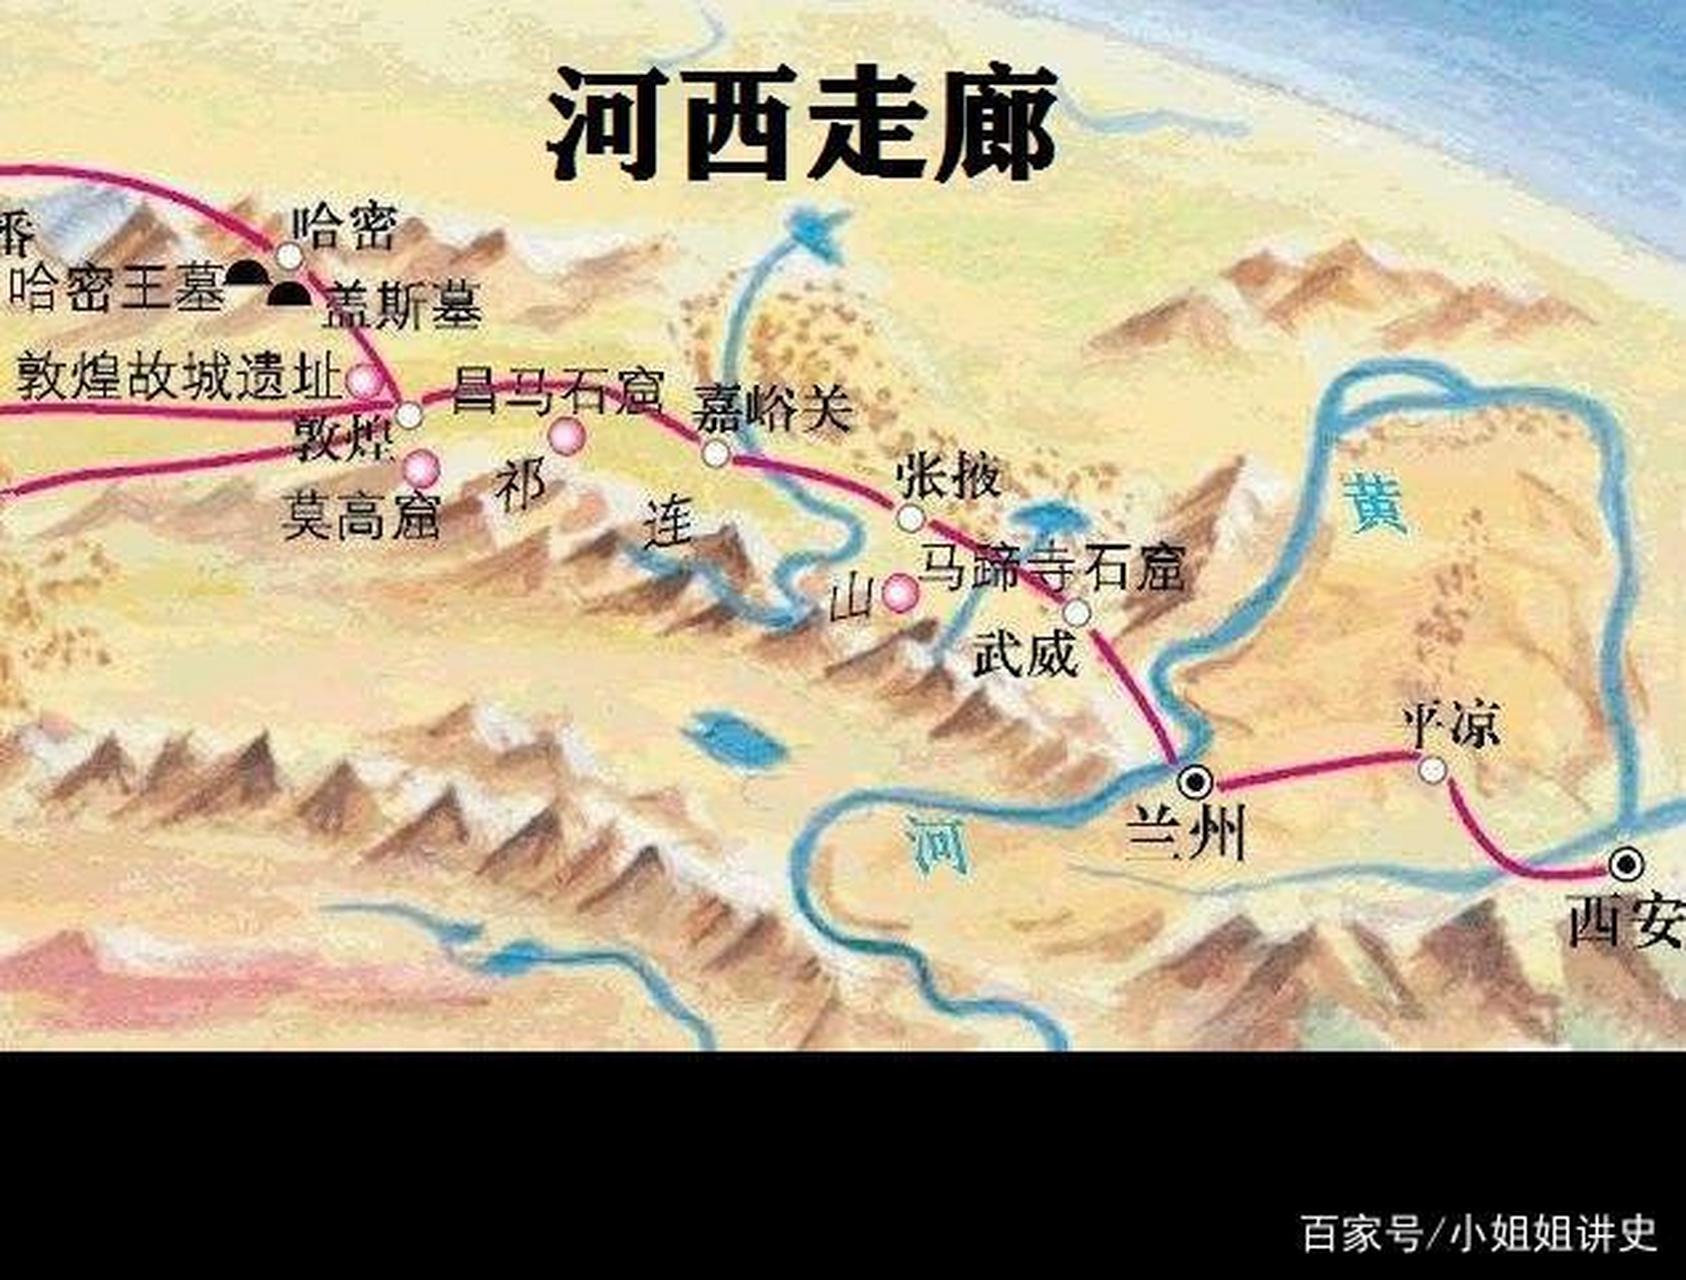 中国三大走廊 河西走廊 甘肃省境内,祁连山以东,合黎山以西,乌鞘岭以